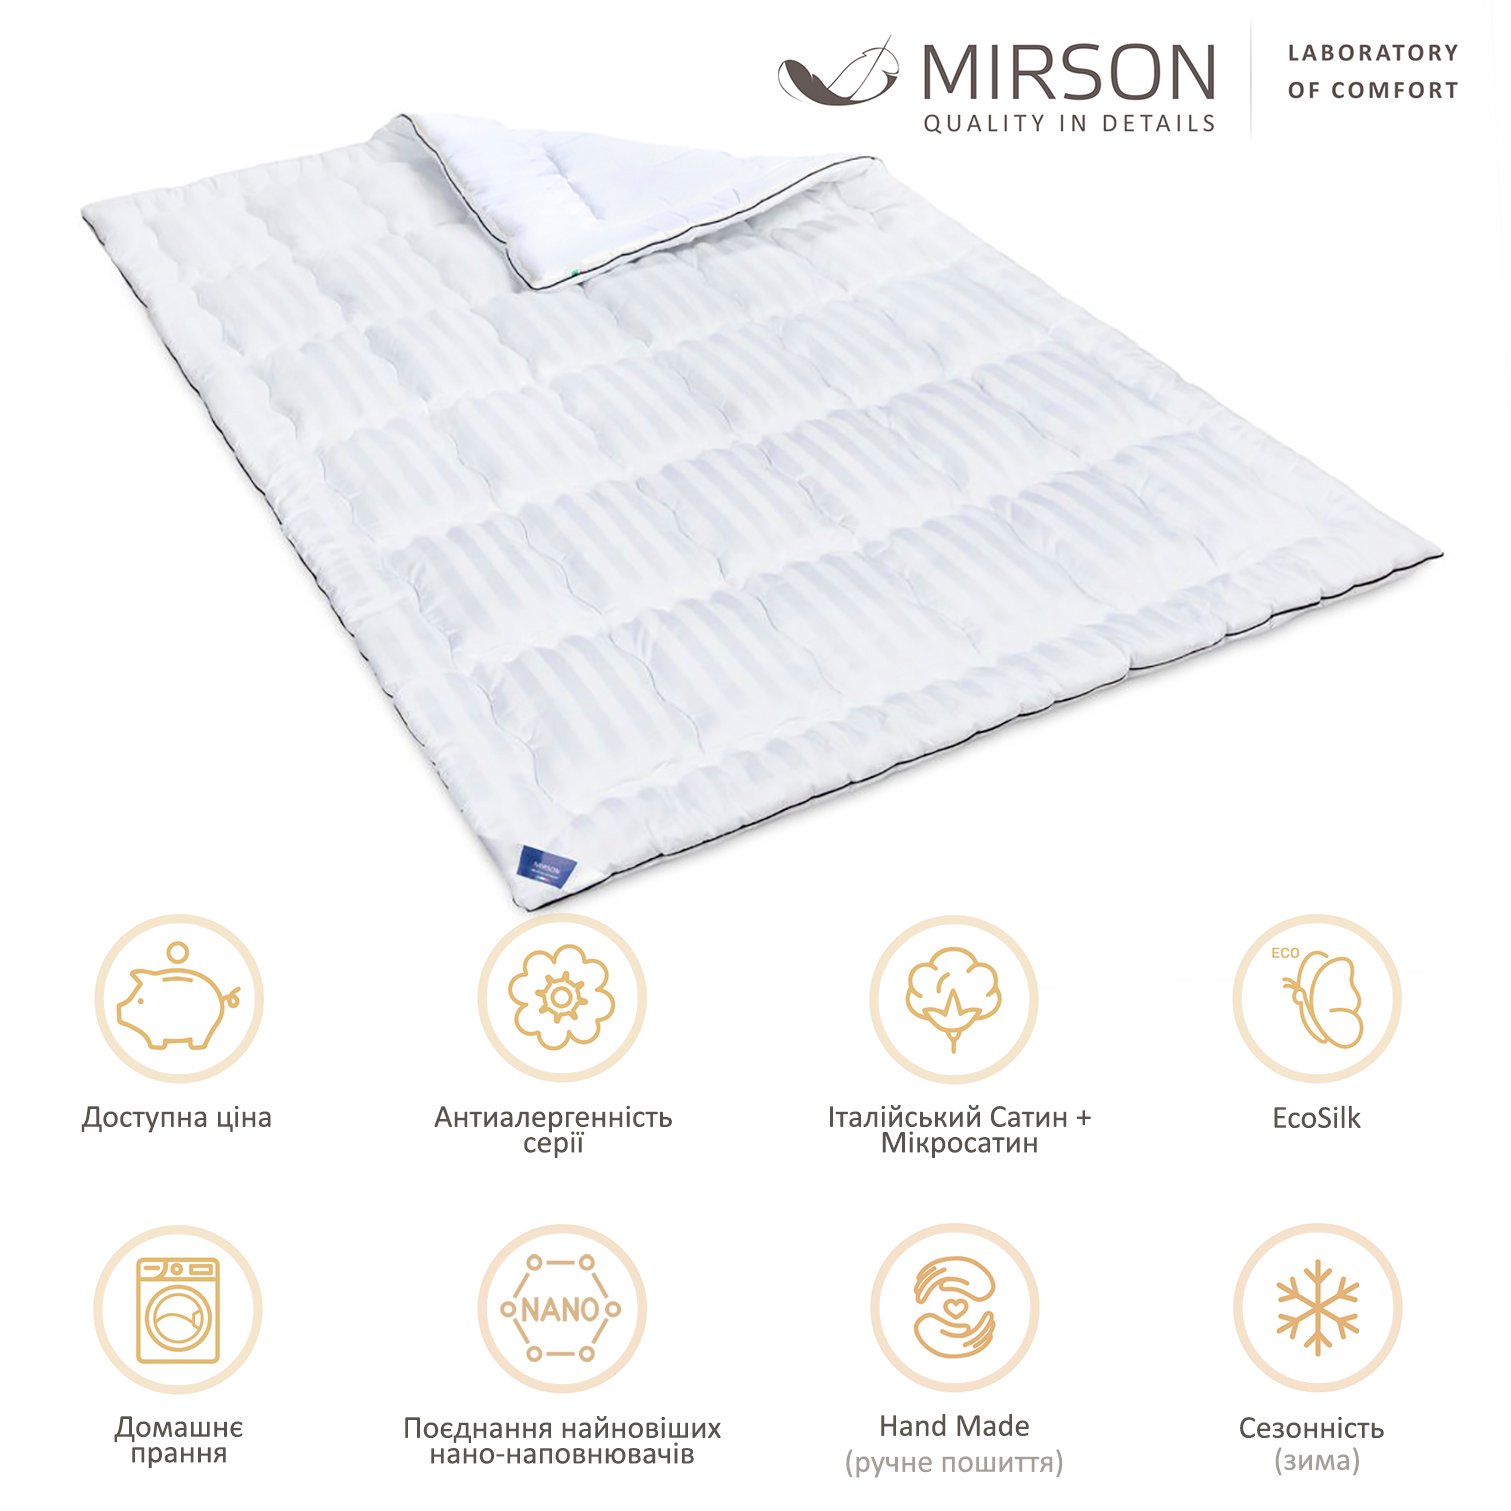 Одеяло антиаллергенное MirSon Royal Pearl Hand Made EcoSilk №0556, зимнее, 220x240 см, белое - фото 5